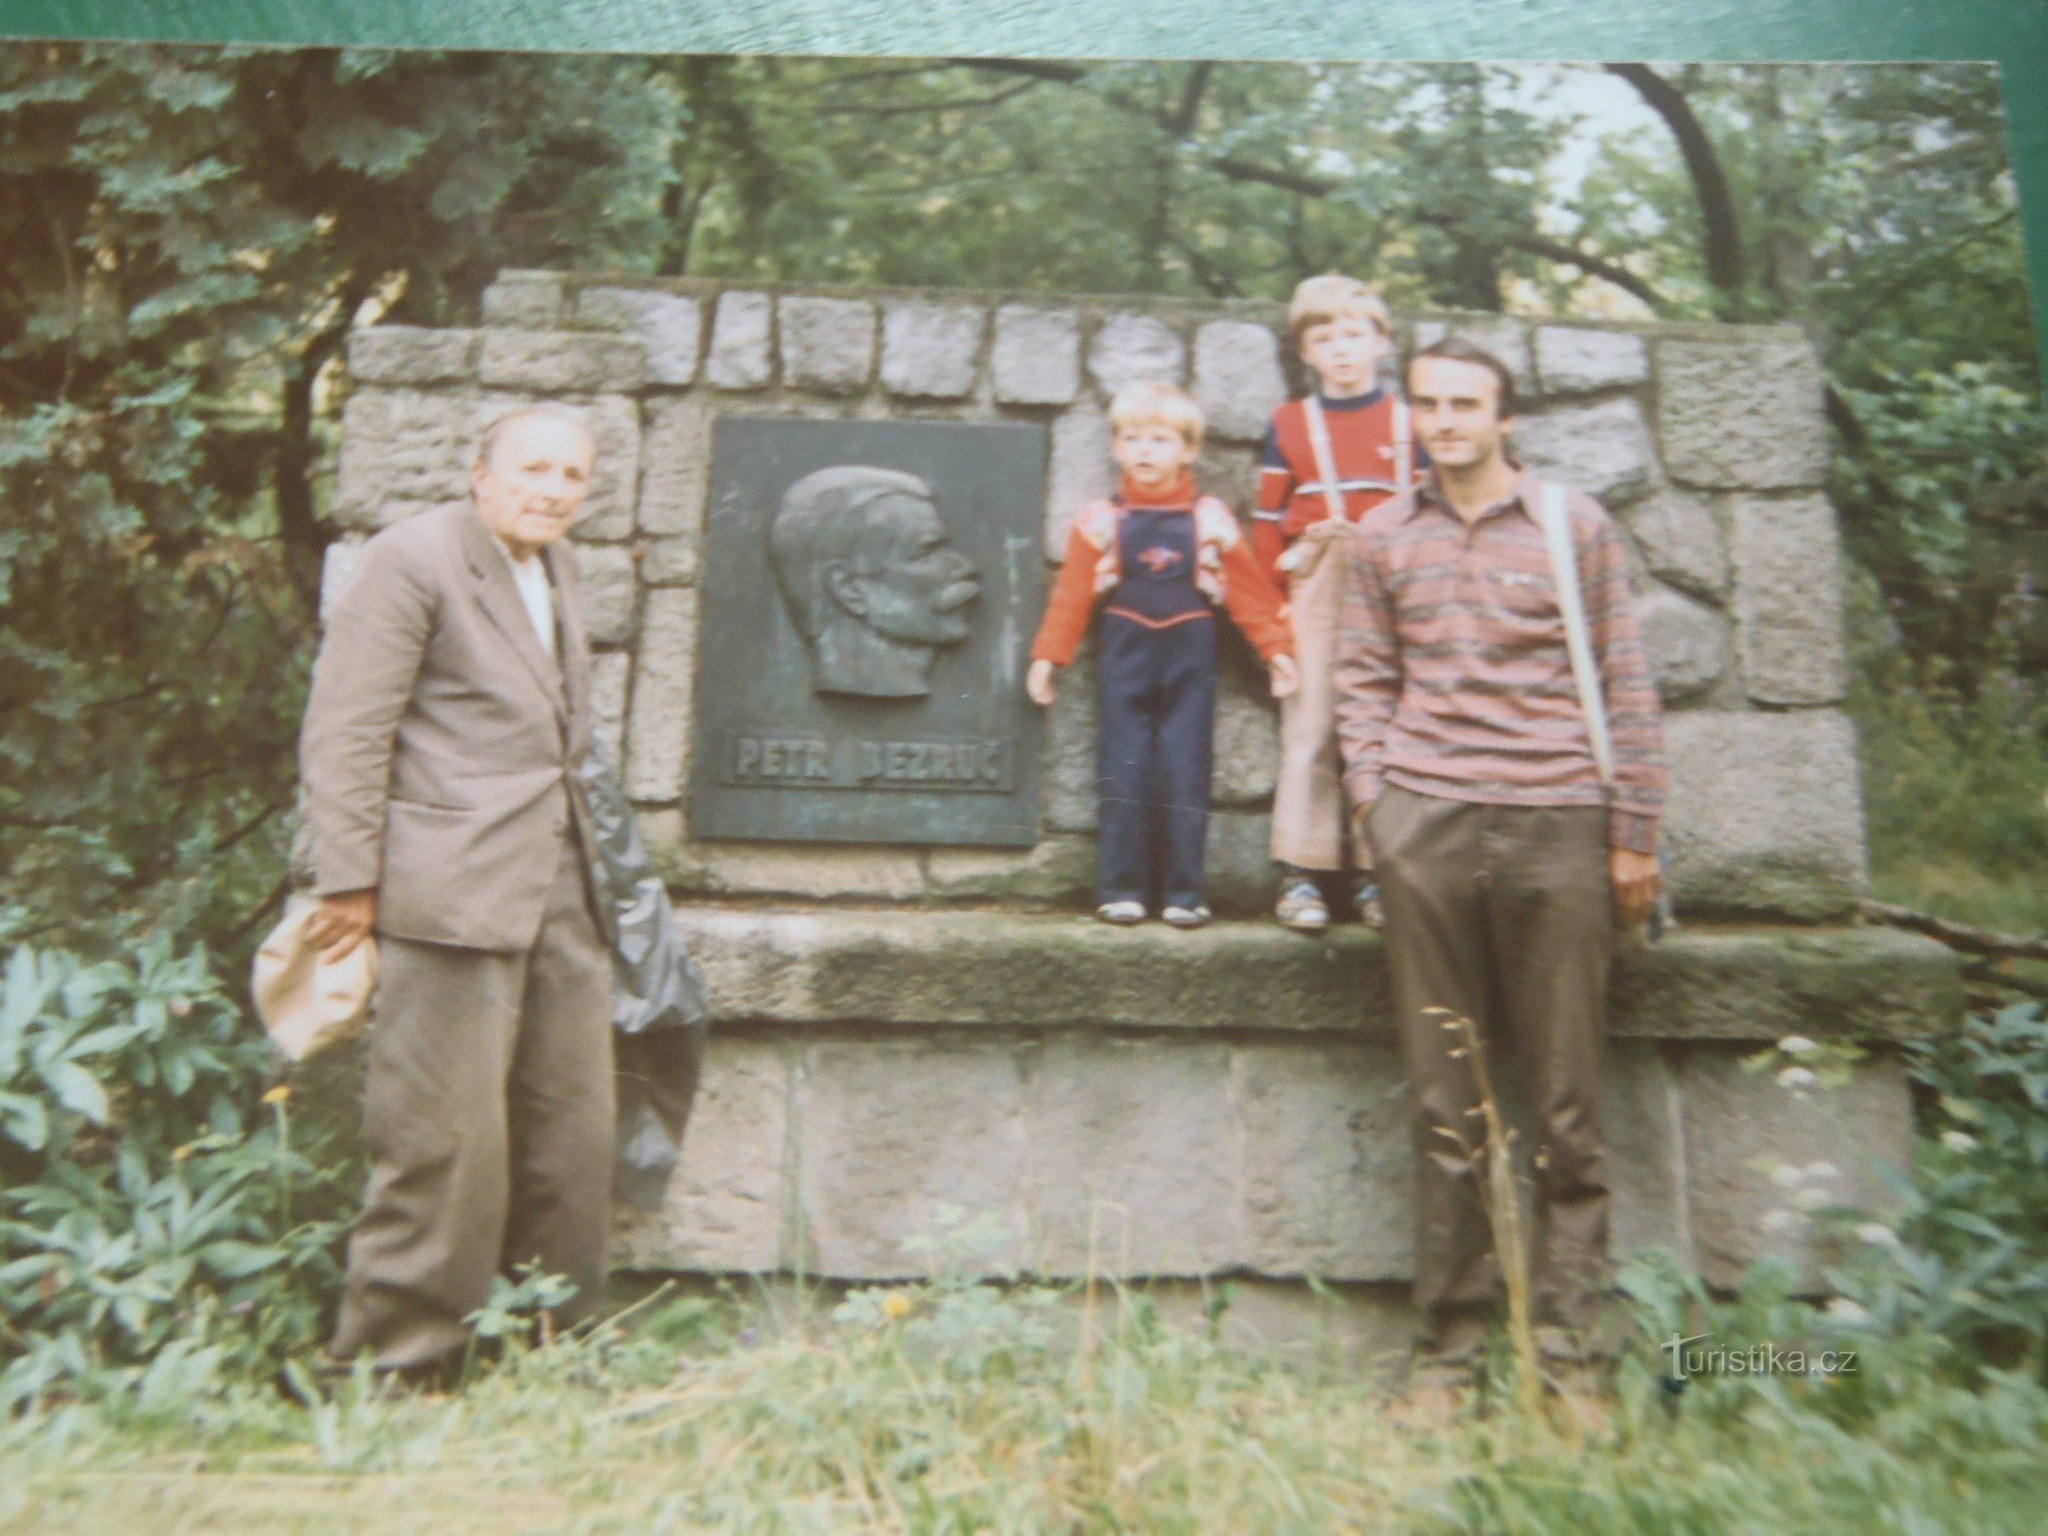 Isto mjesto, godina 1987. Moj tata Otakar Vašek, nećak Petr Bezruč i unuk Anto